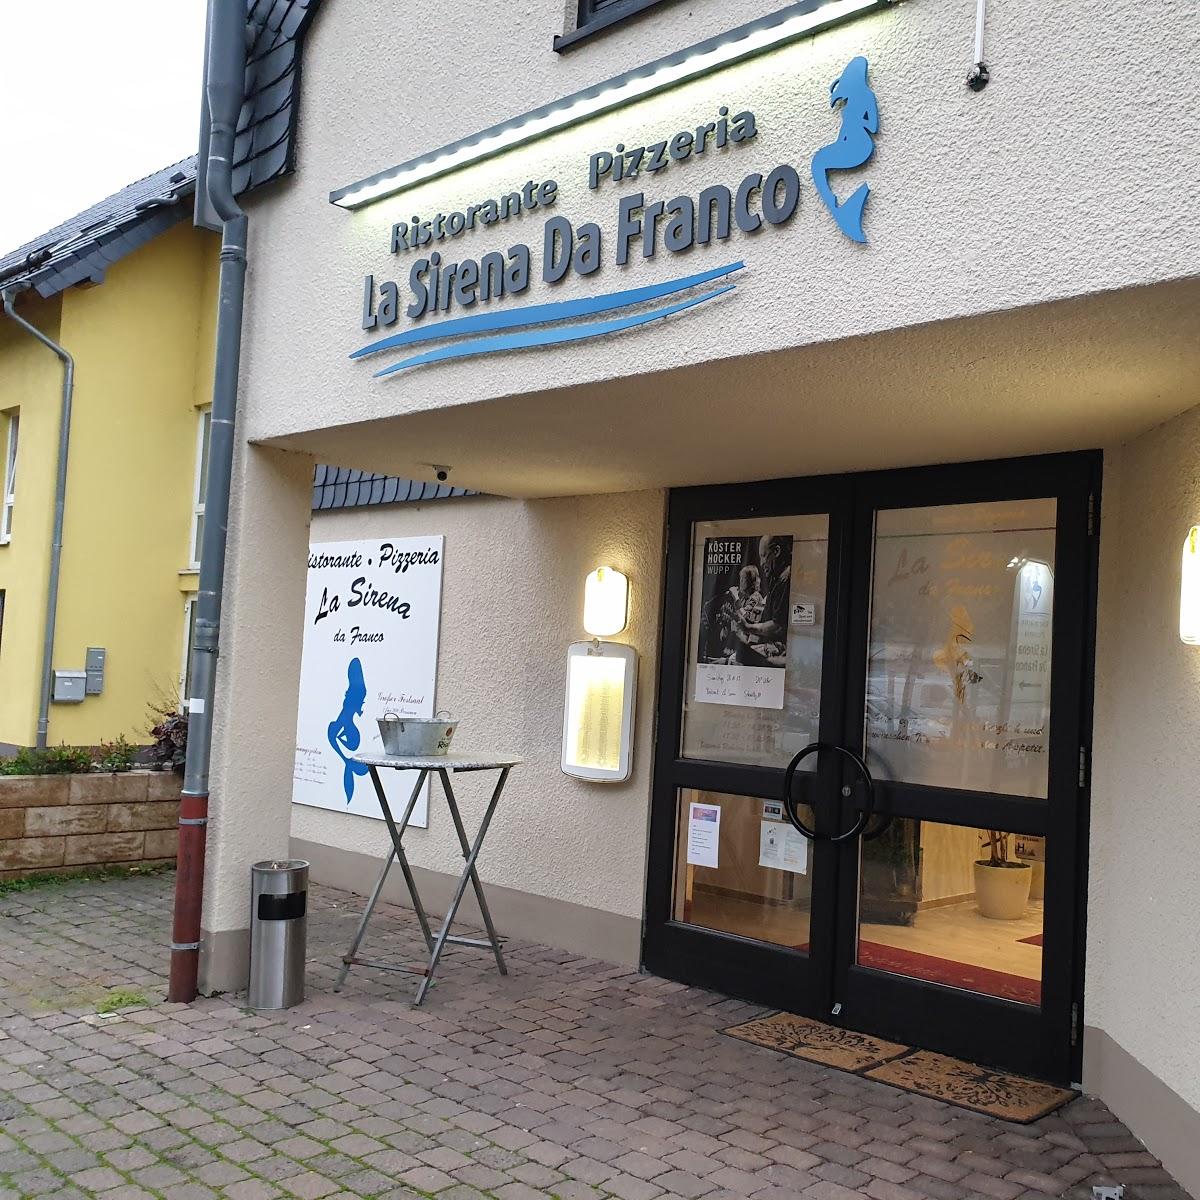 Restaurant "La Sirena da Franco" in  Stadtkyll